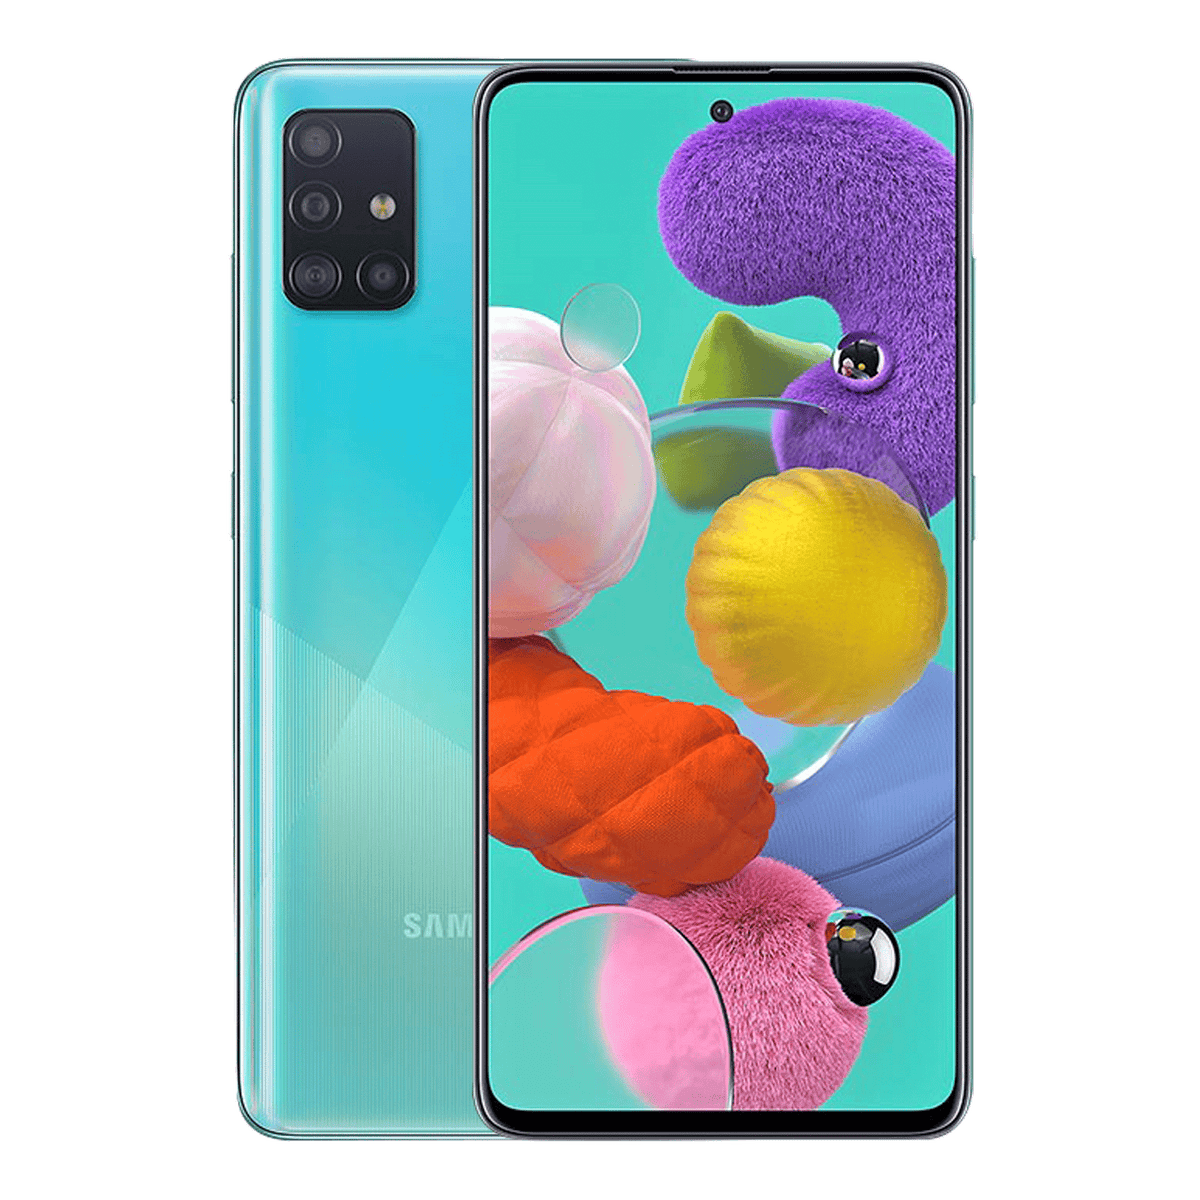 Samsung Galaxy A51 (2019)